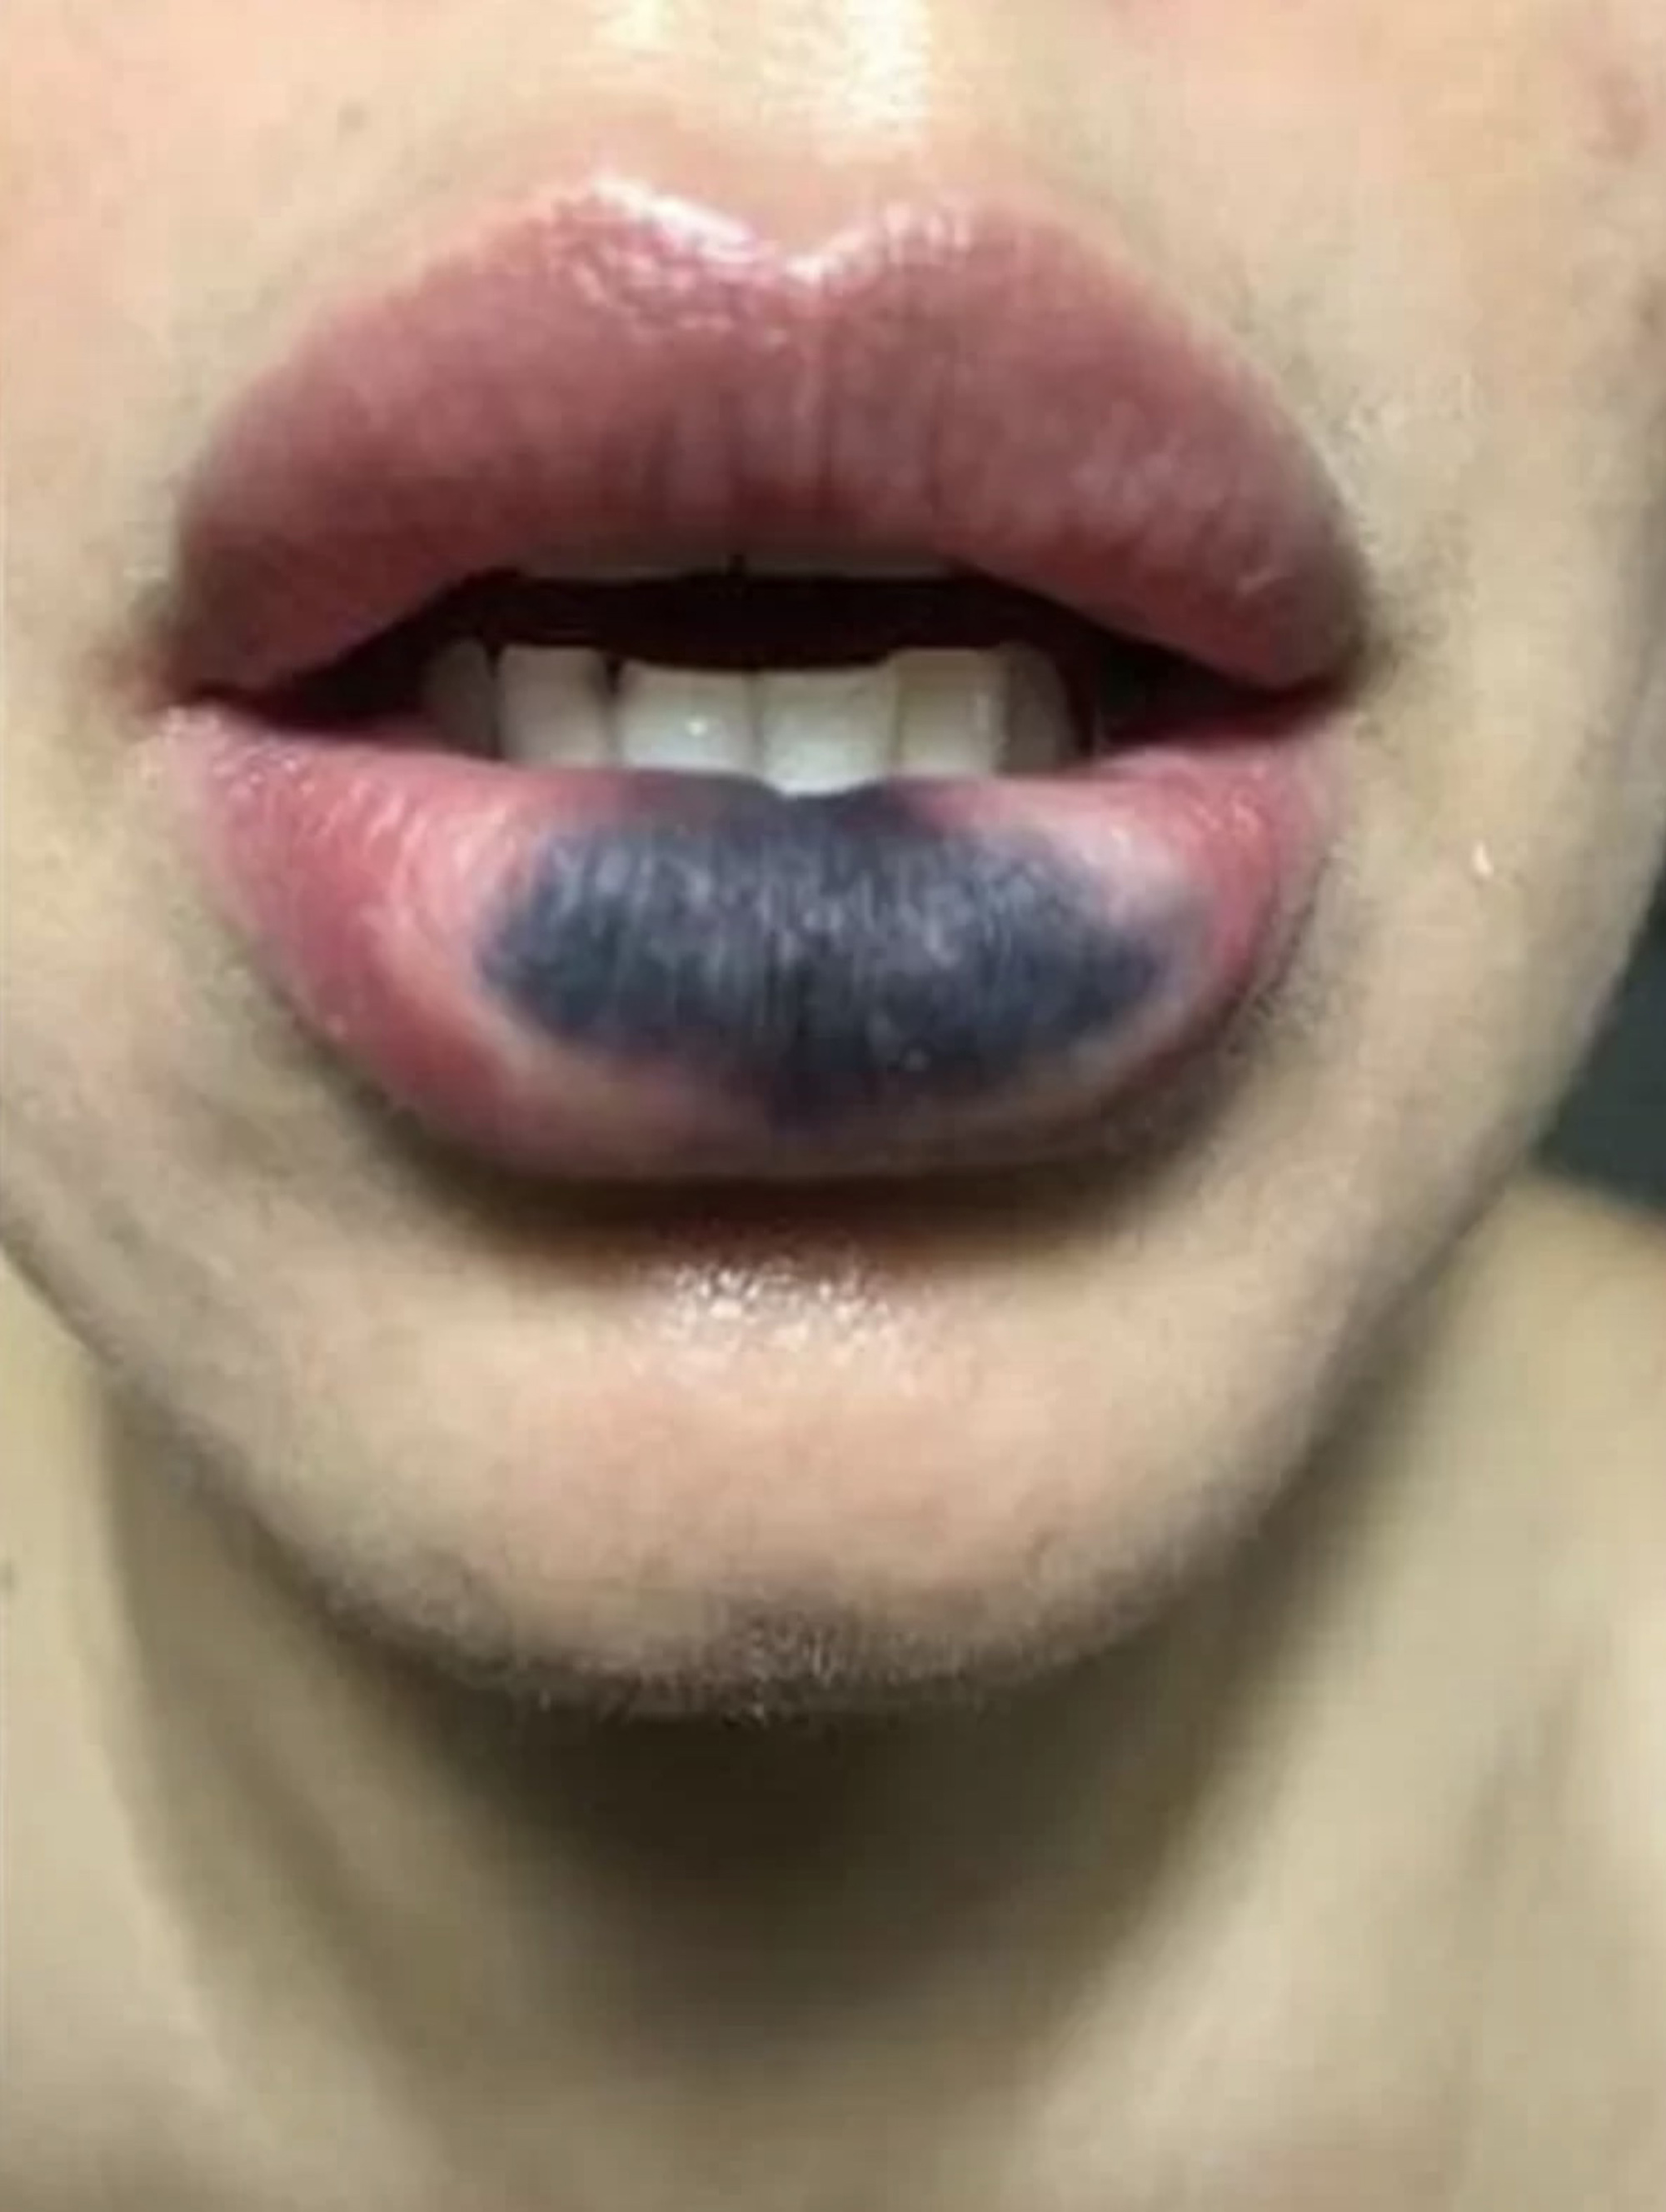 Eine andere Frau übermittelte der Polizei Bilder ihrer geschwärzten Lippe